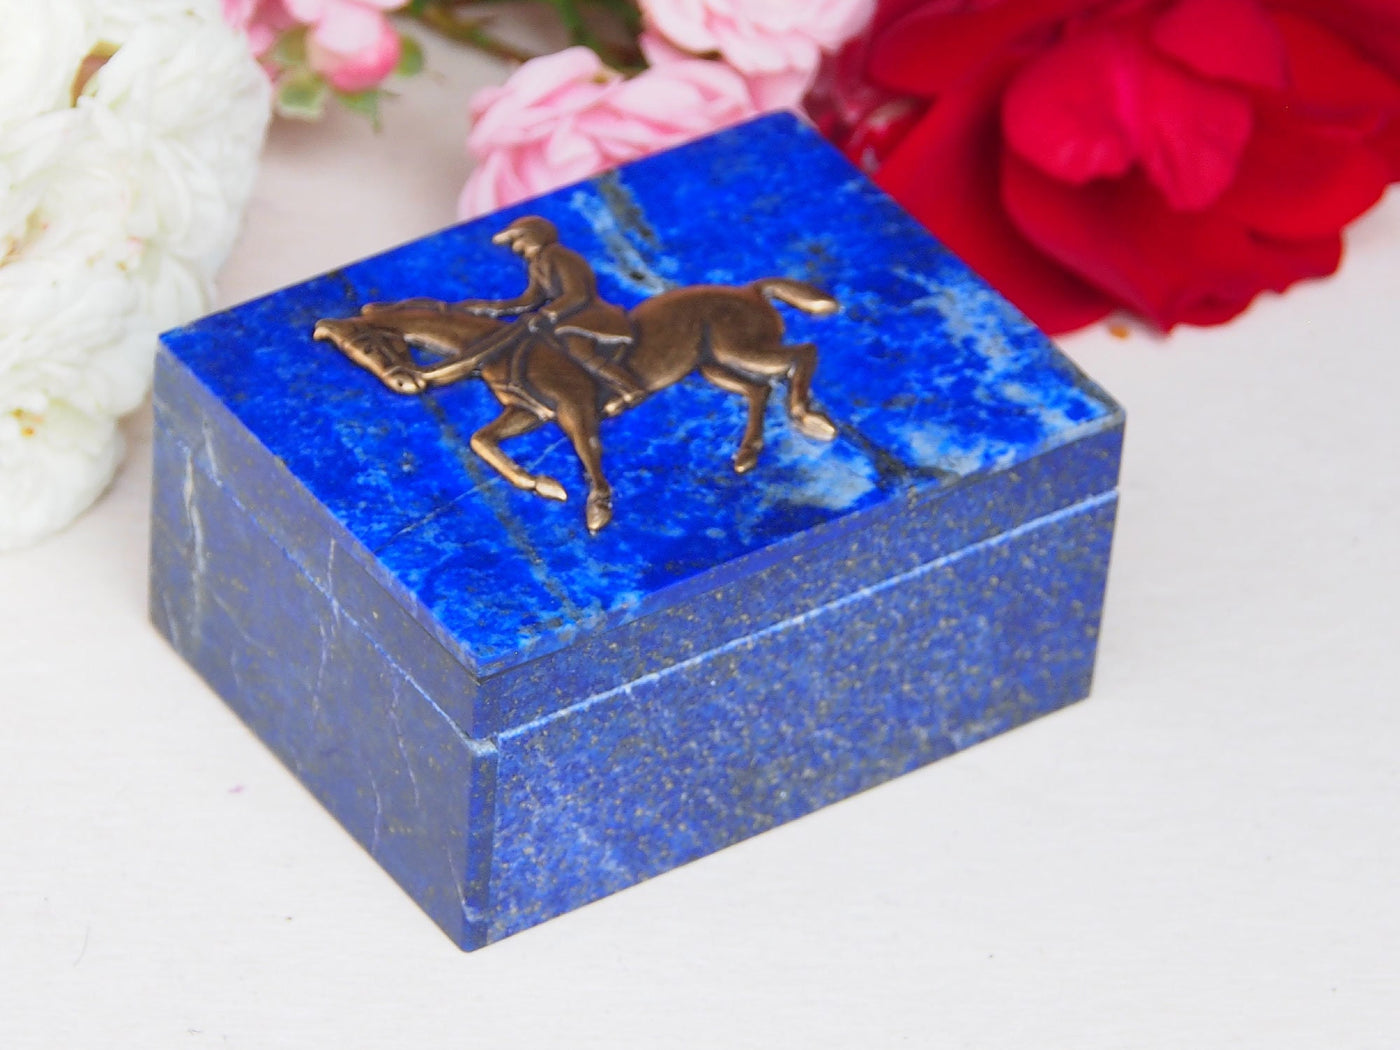 Extravagant Royal blau echt Lapis lazuli büchse Schmuck Dose schatulle Kiste schmuckkiste Pillendose mit  messing  Springreiten Nr-18/11  Orientsbazar   